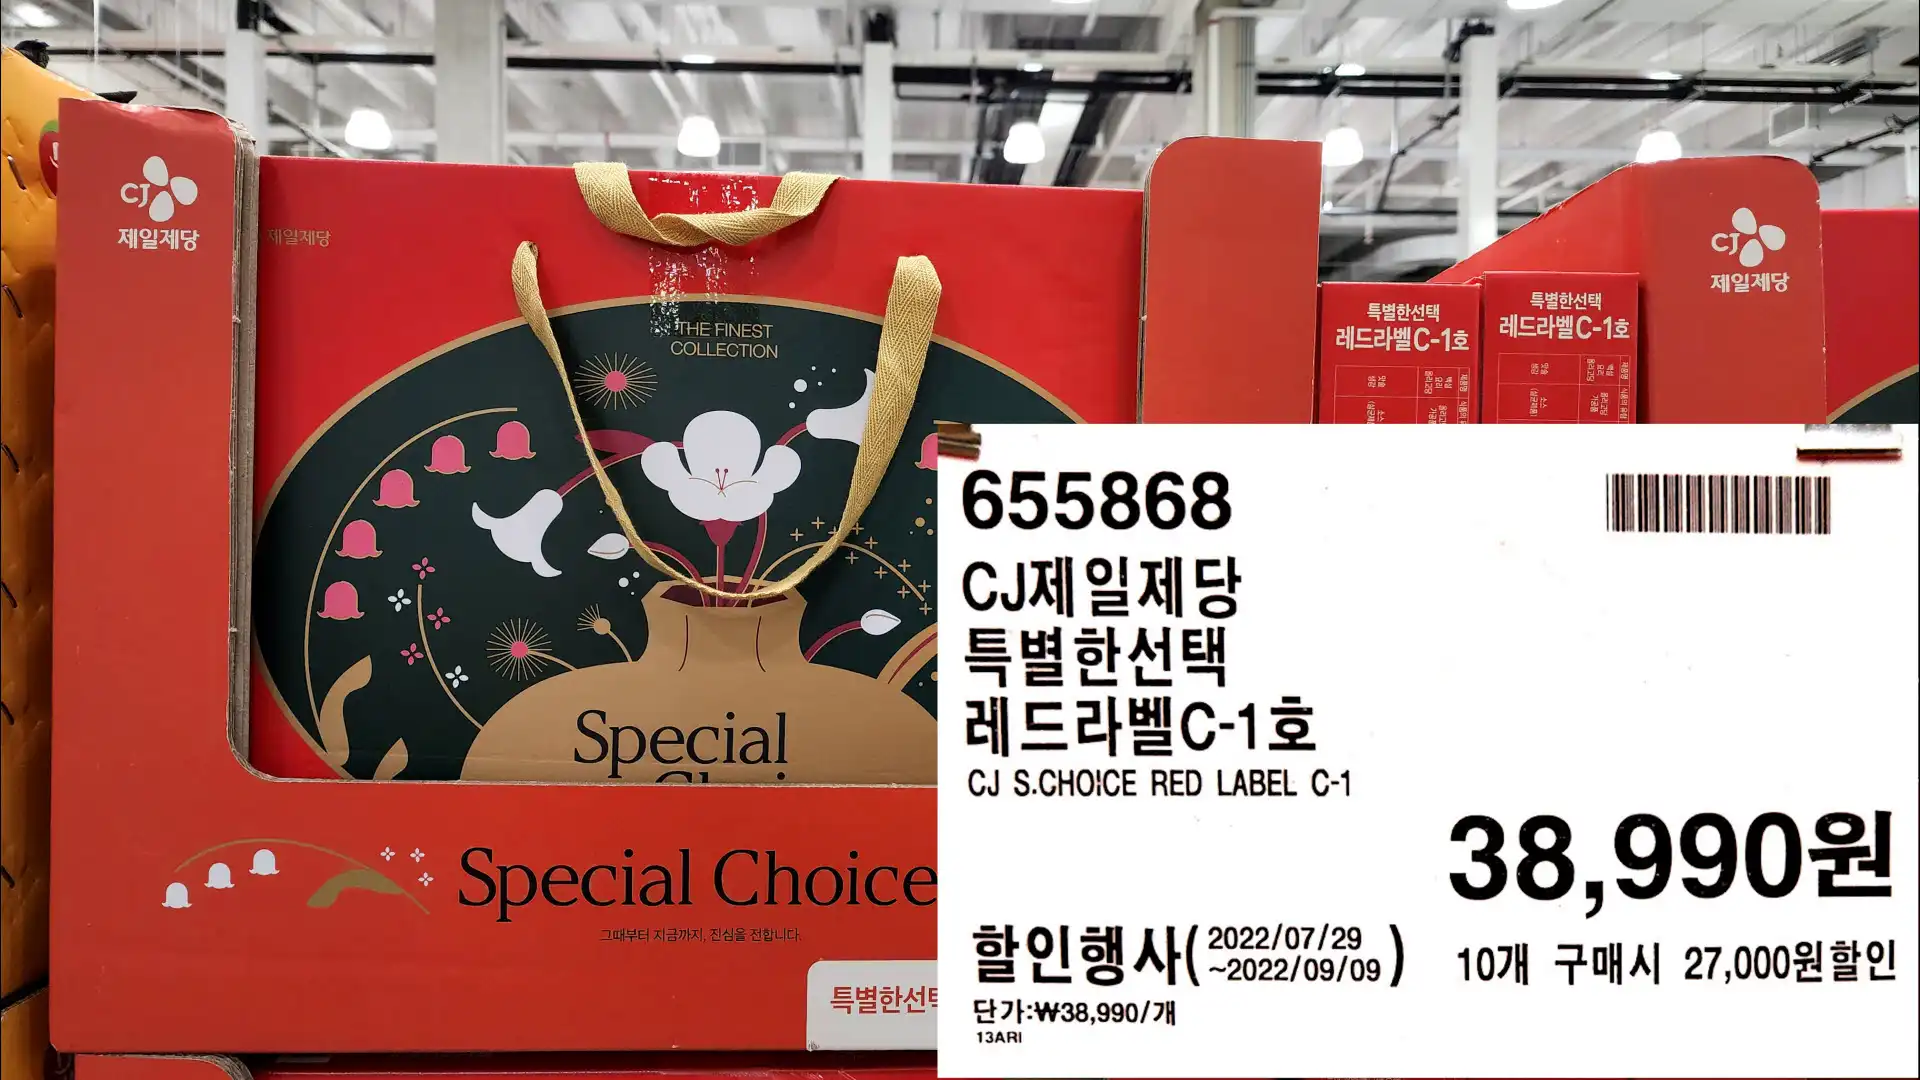 CJ제일제당
특별한선택
레드라벨C-1호
CJ S.CHOICE RED LABEL C-1
38&#44;990원
10개 구매시 27&#44;000원할인